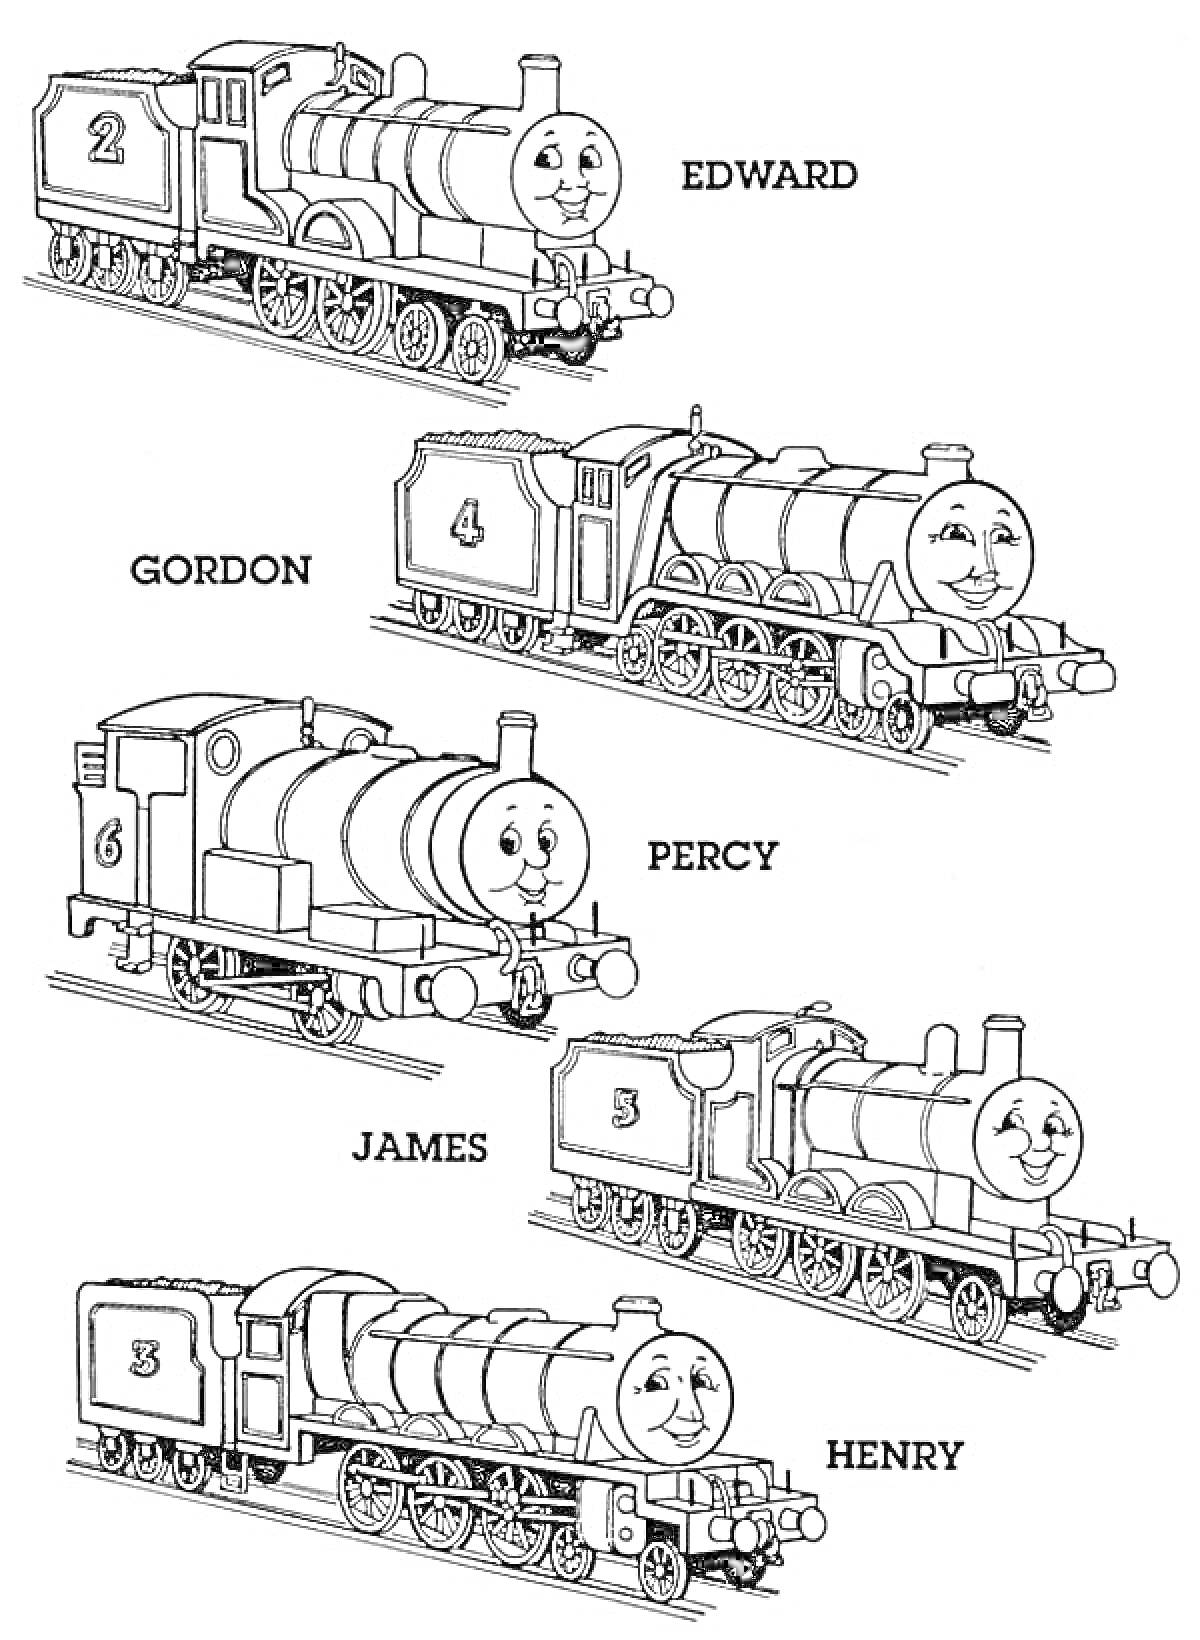 Раскраска Паровозики со смайликами (Эдвард, Гордон, Перси, Джеймс, Генри), локомотивы с номерами и именами